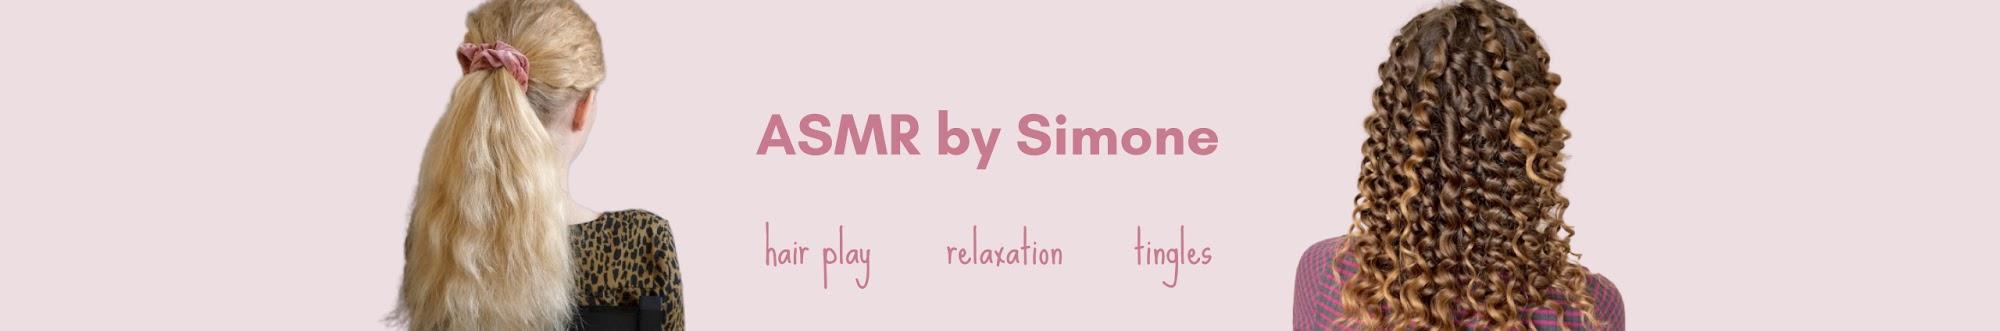 ASMR by Simone